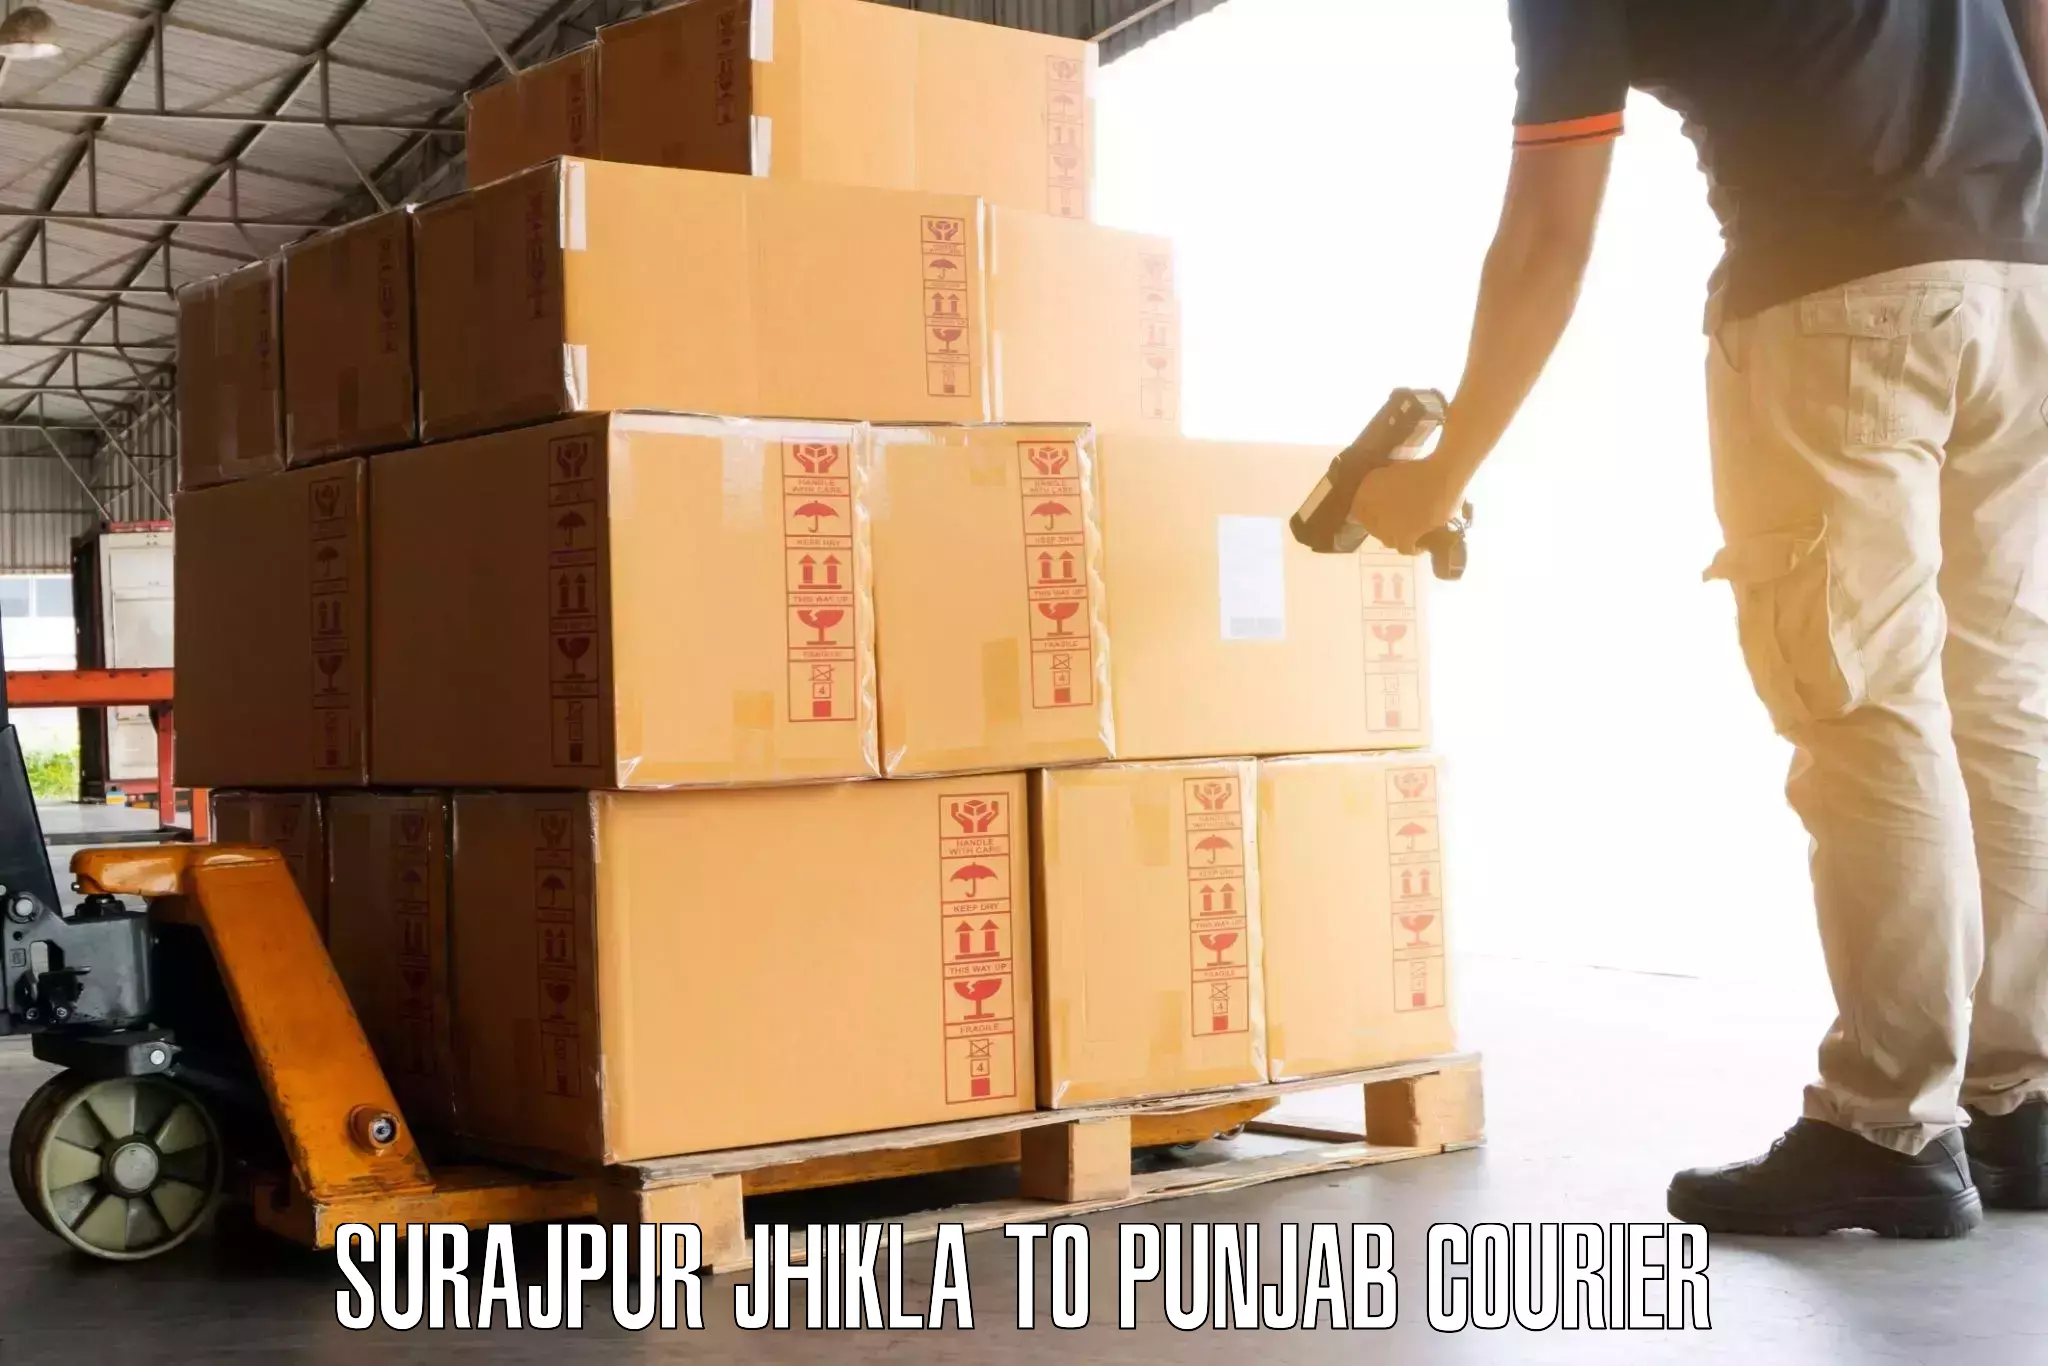 Luggage transfer service Surajpur Jhikla to Patiala